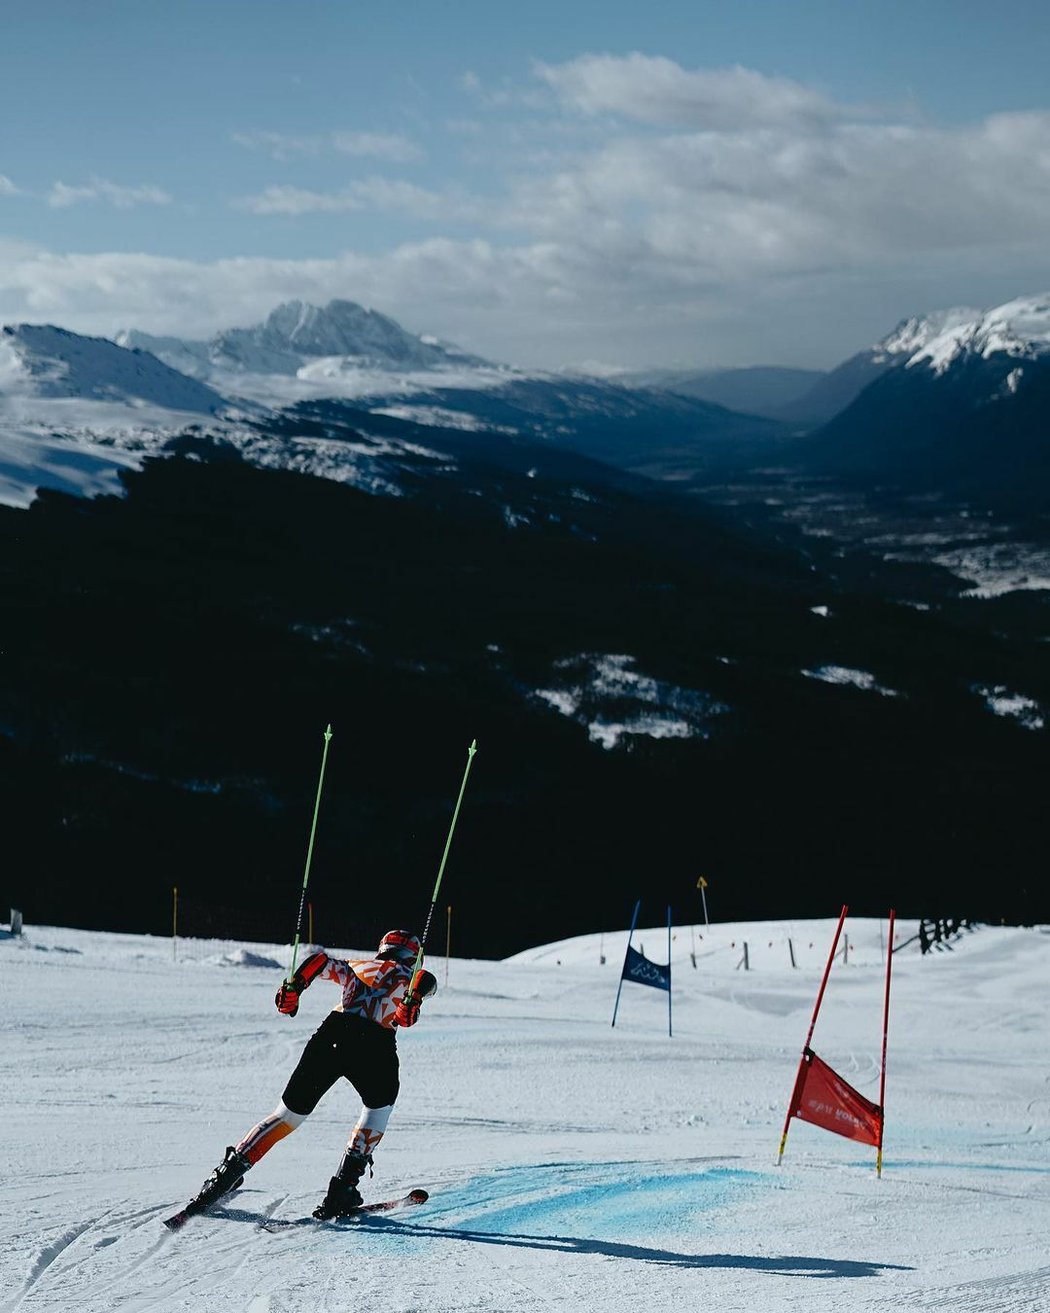 Slovenská lyžařka Petra Vlhová si několik měsíců nezalyžuje